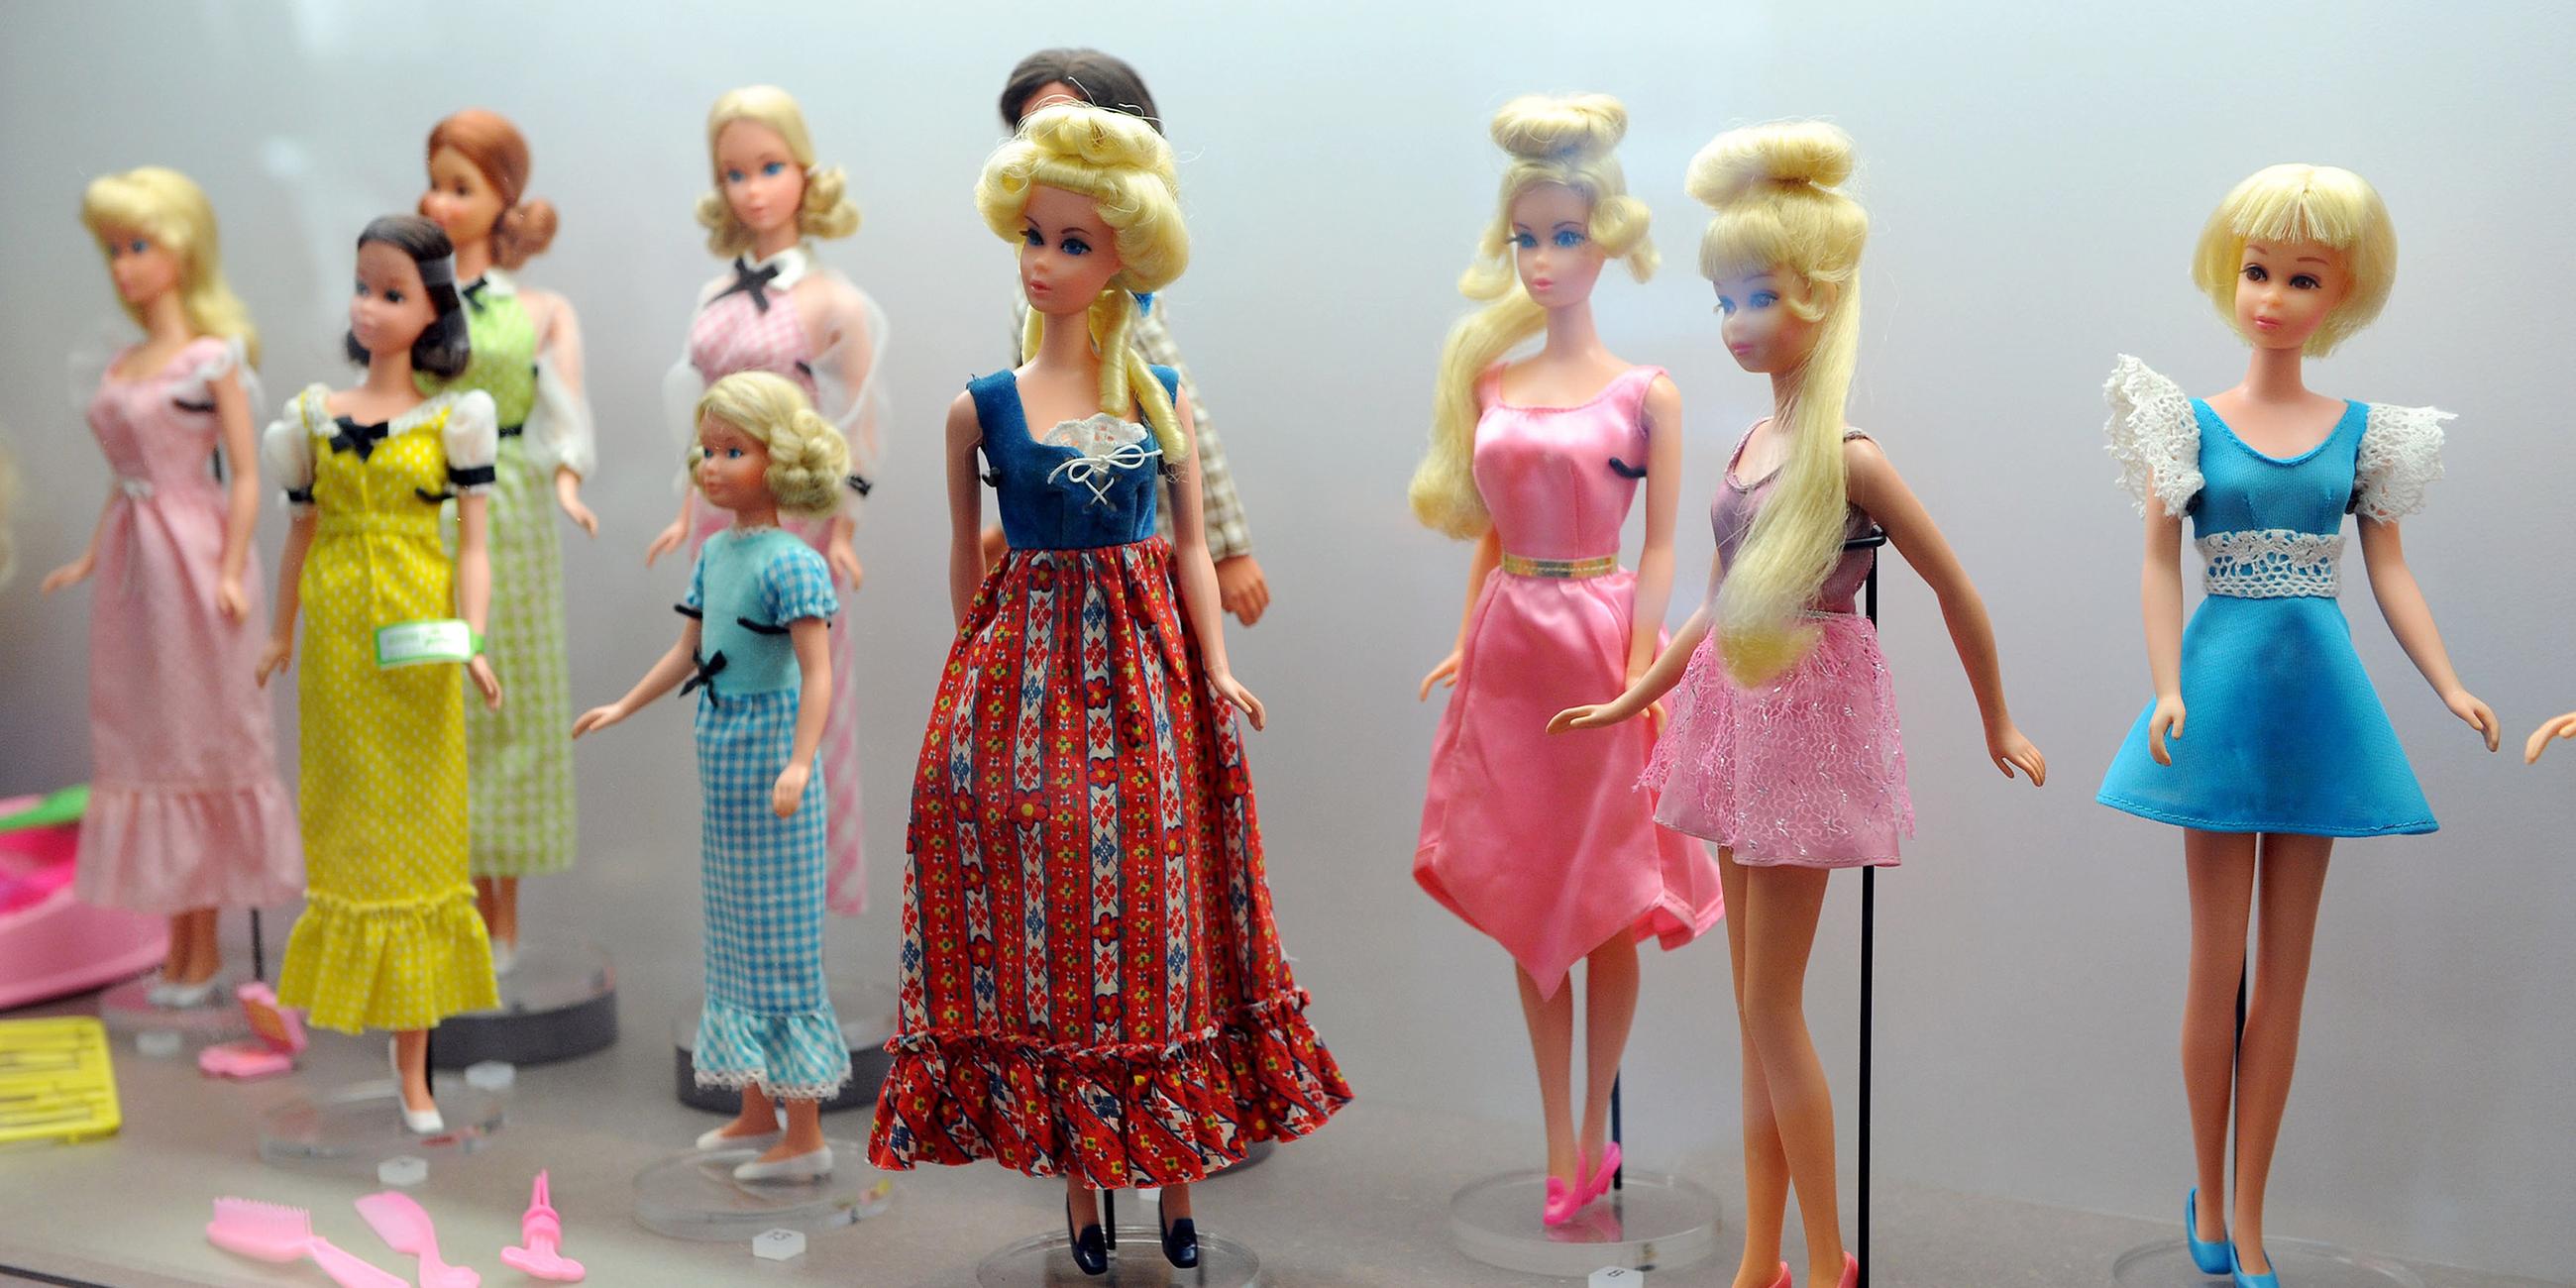 Barbiepuppen in verschiedenen Kleidungsstücken und Frisuren